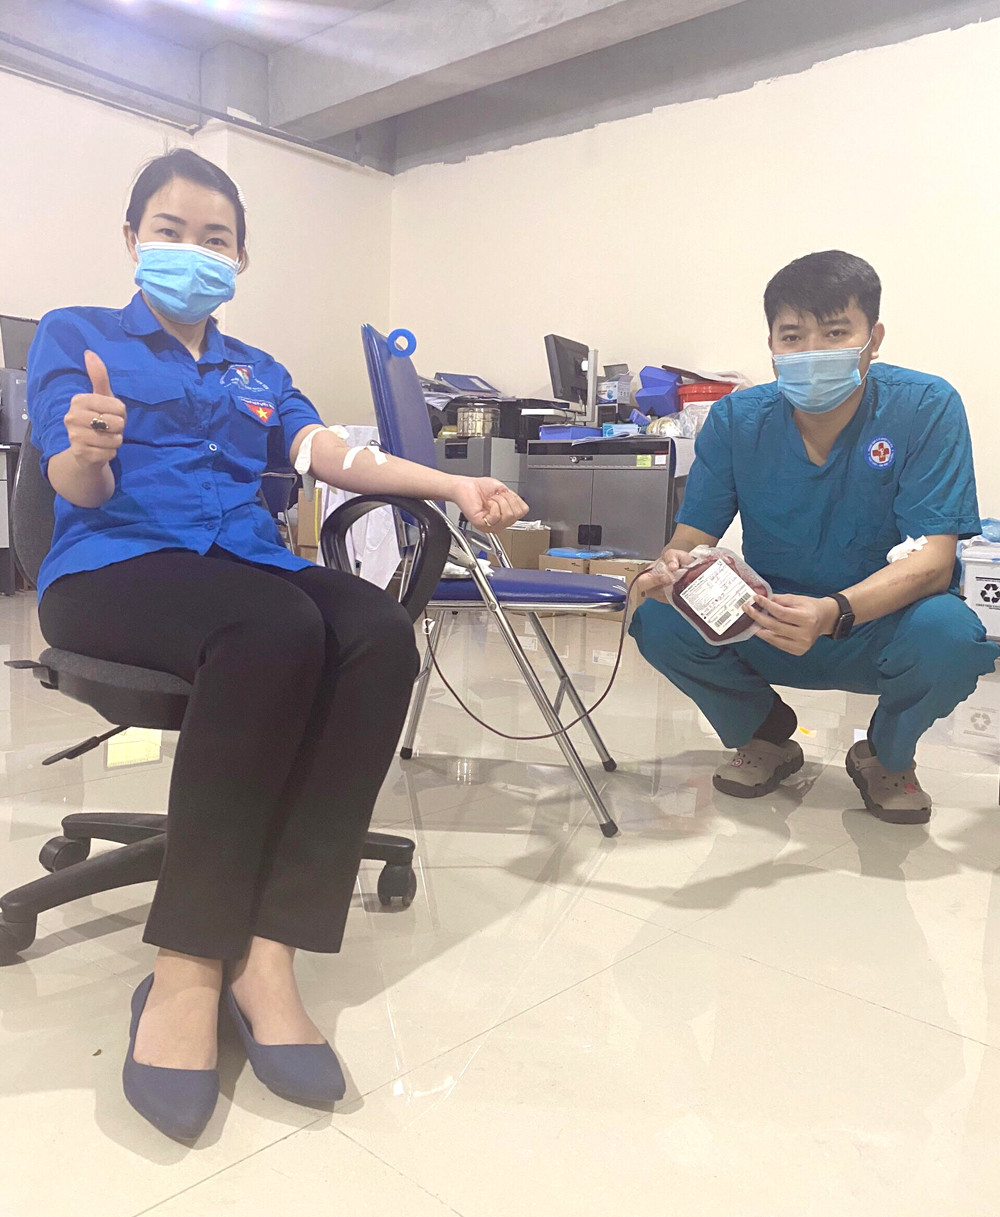 Chị Mai Việt Hồng, Phó Chủ nhiệm CLB Ngân hàng máu sống huyện Tiên Yên trong lần hiến máu giúp bệnh nhân C.N.M (xã Đồng Văn, huyện Bình Liêu) qua cơn nguy kịch.